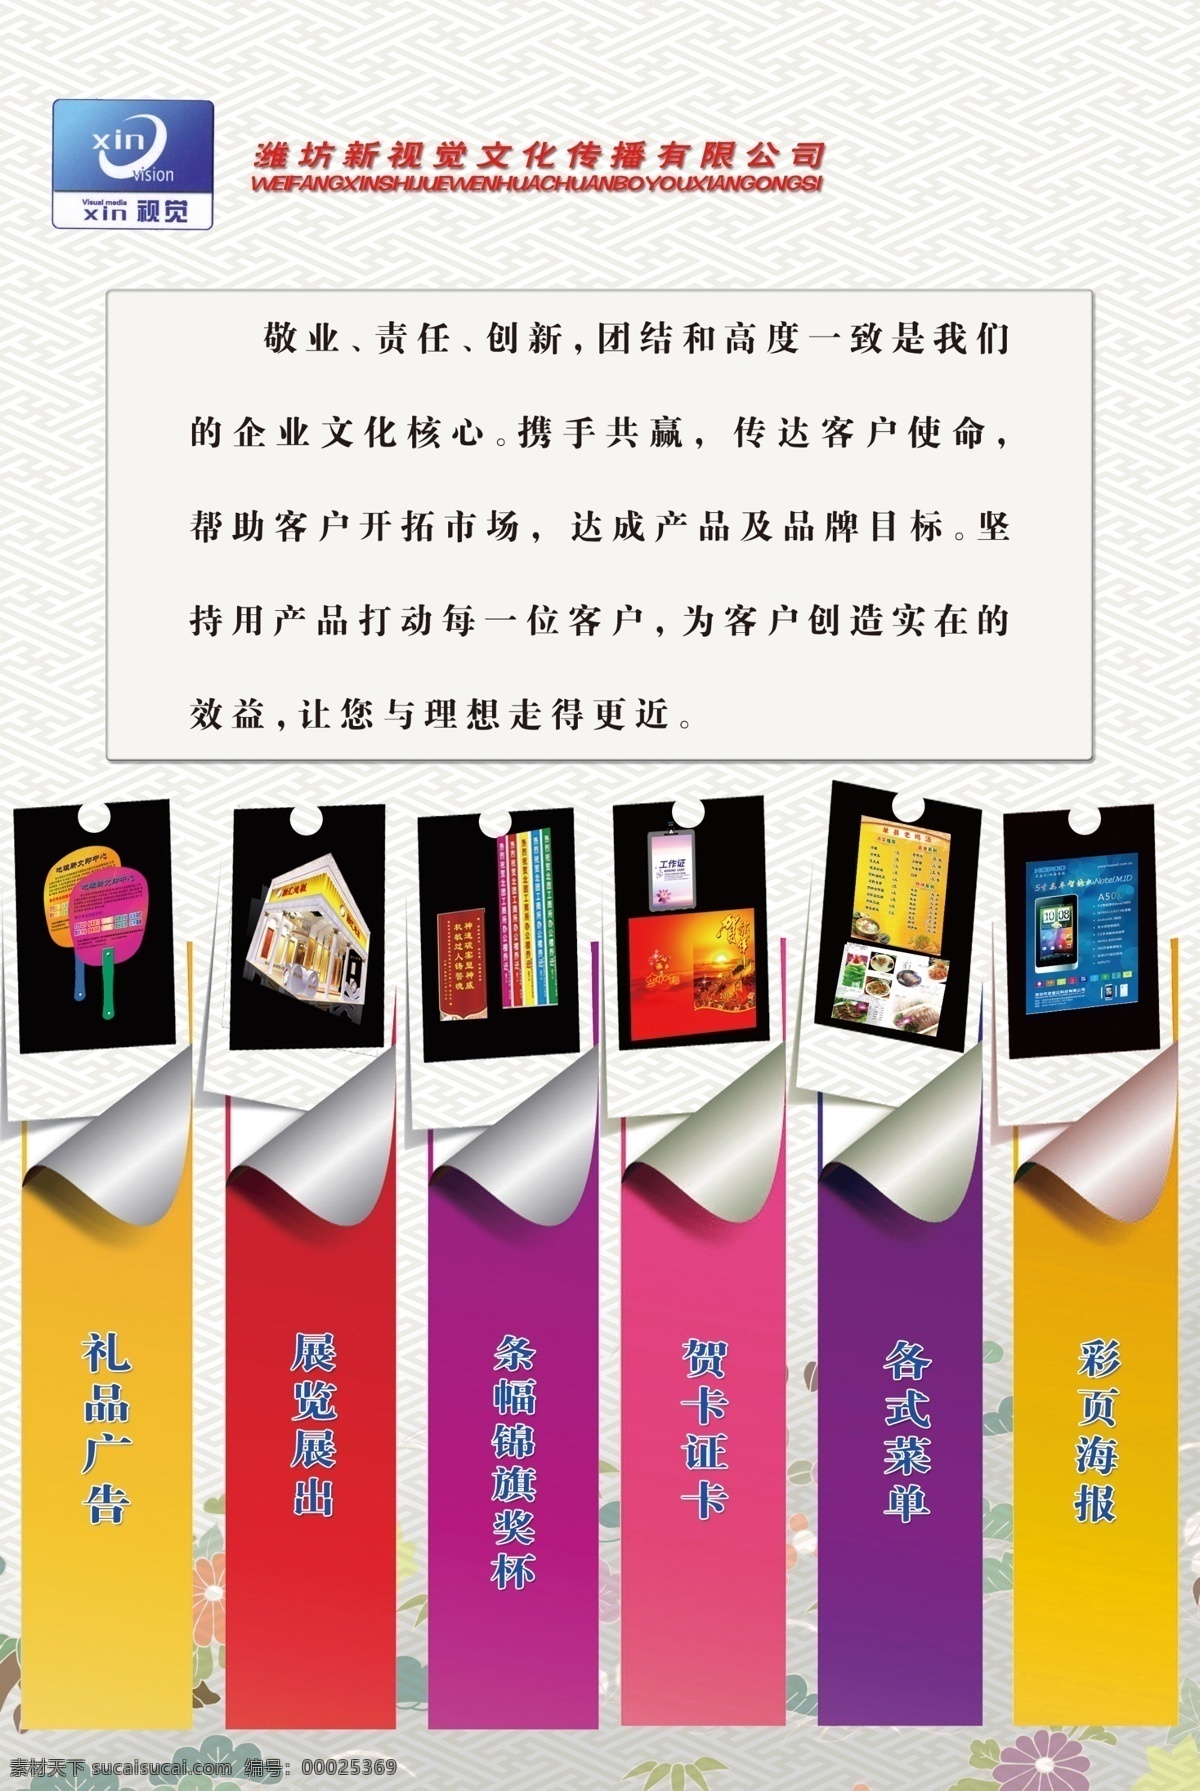 广告公司 业务 宣传 面板 清新 中国风 广告业务 淡色背景 简洁设计 展板模板 广告设计模板 源文件